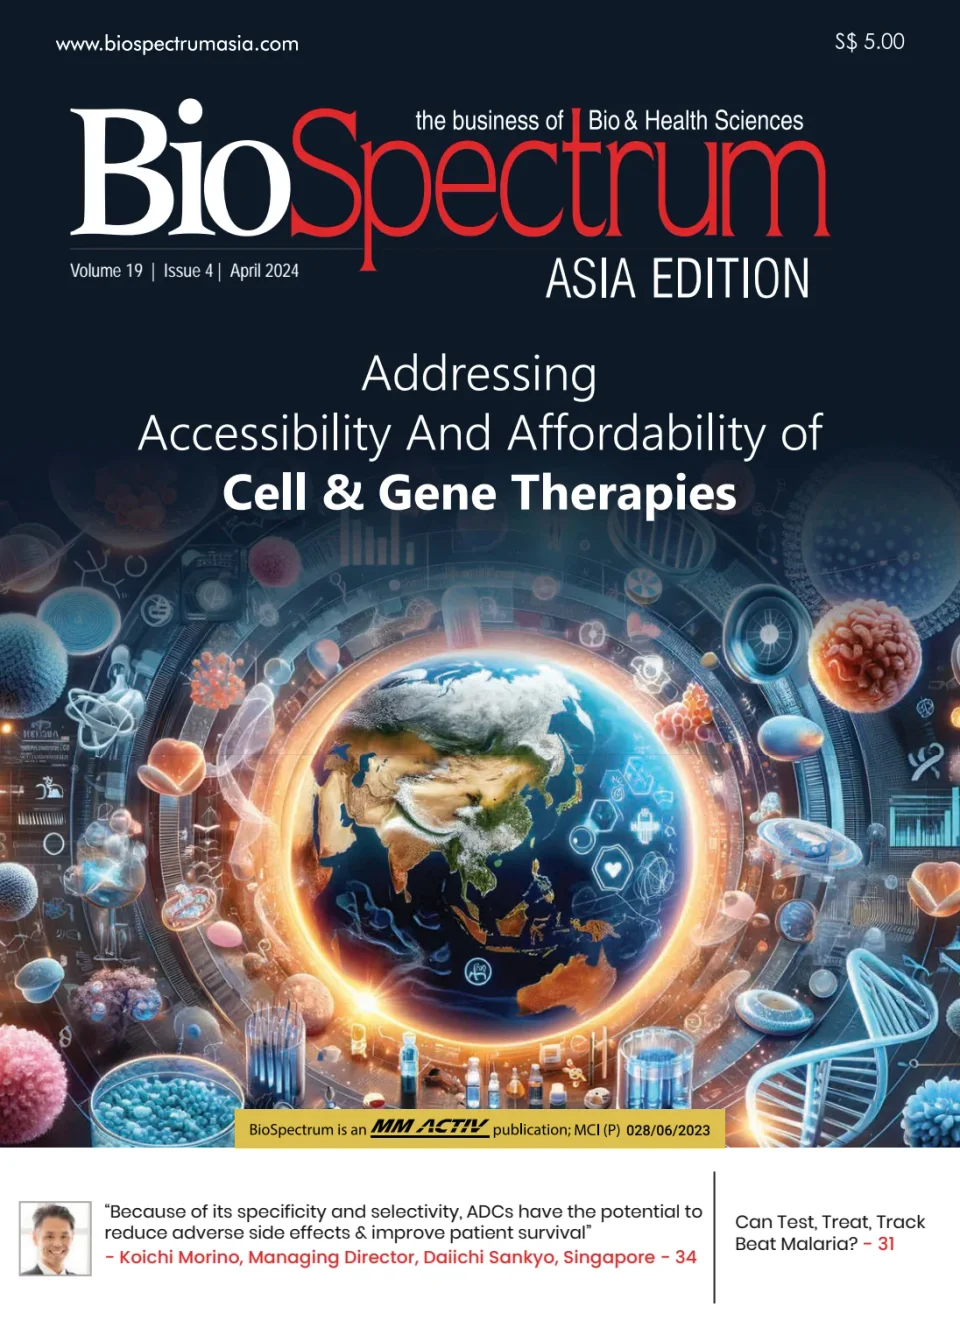 BioSpectrum Asia